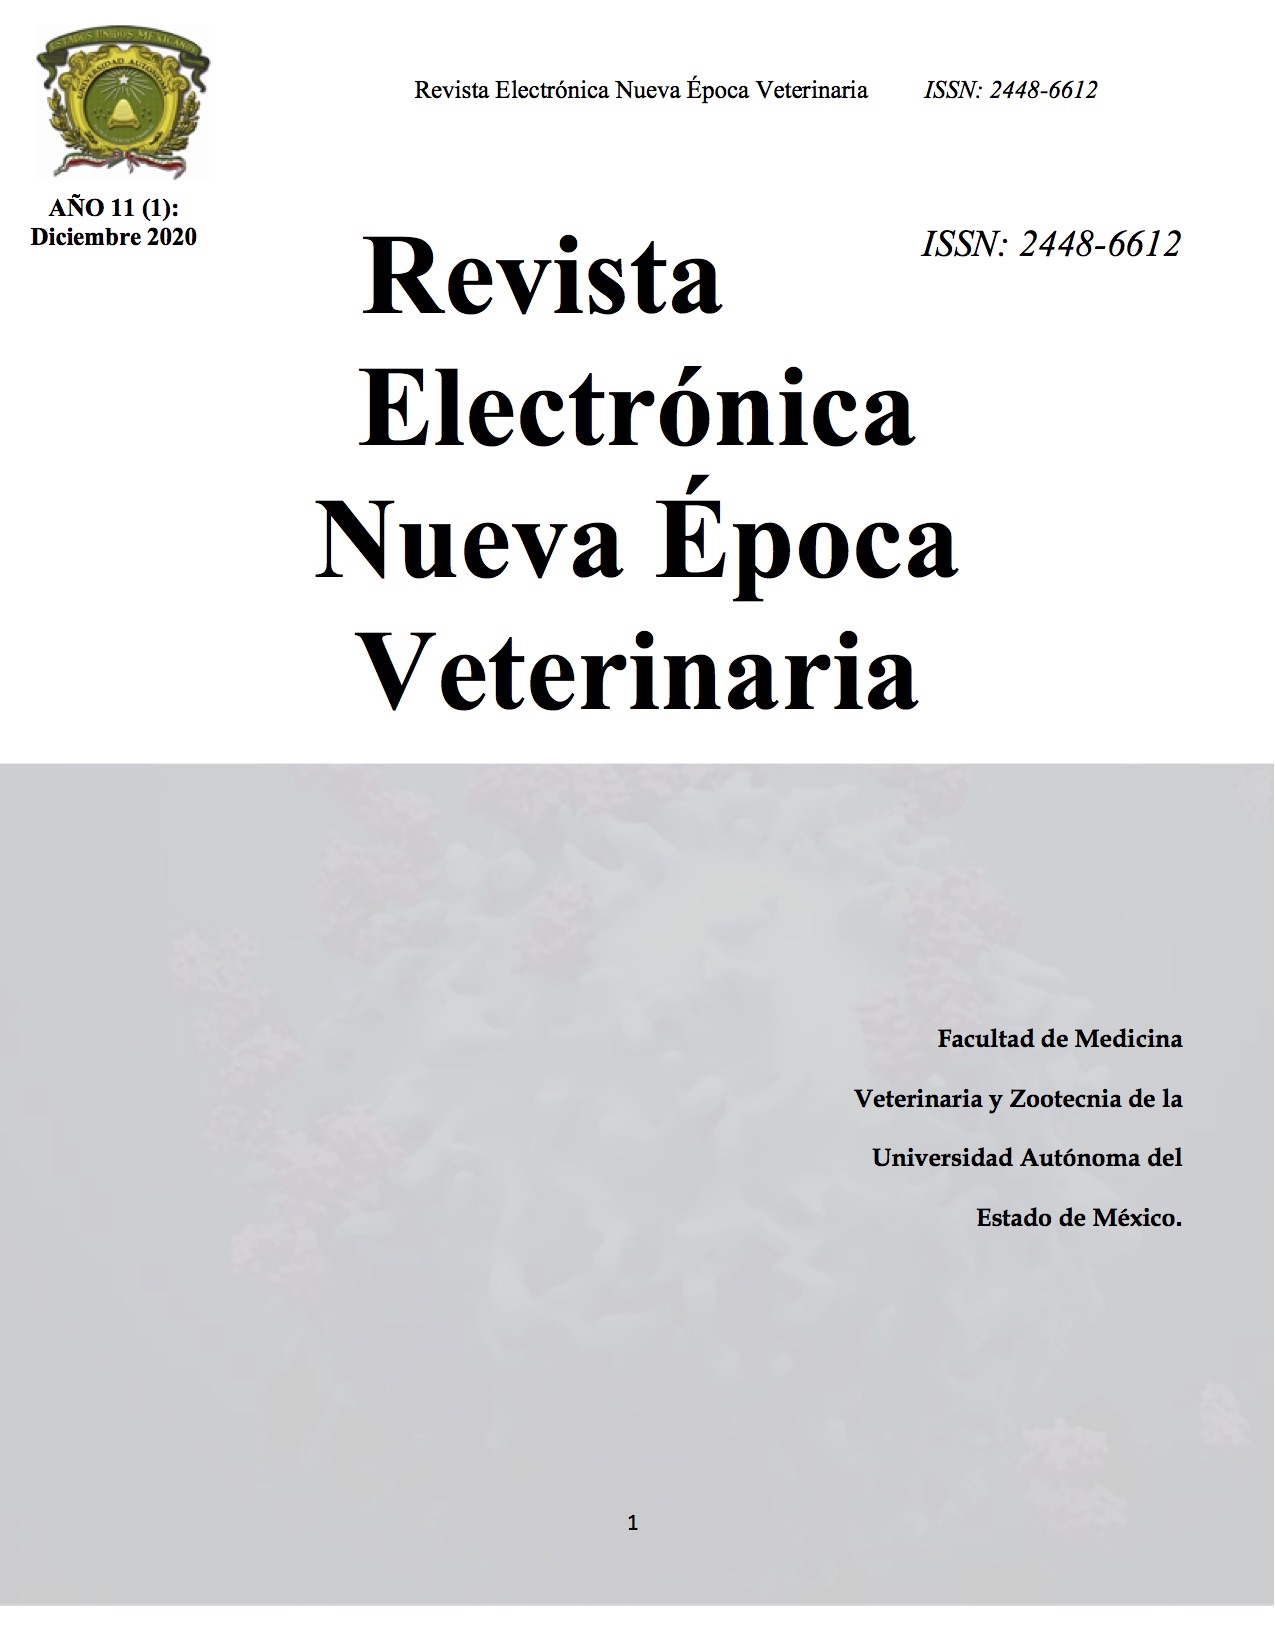 Revista Electrónica Nueva Época Veterinaria, Año 11 - No. 1, Diciembre 2020